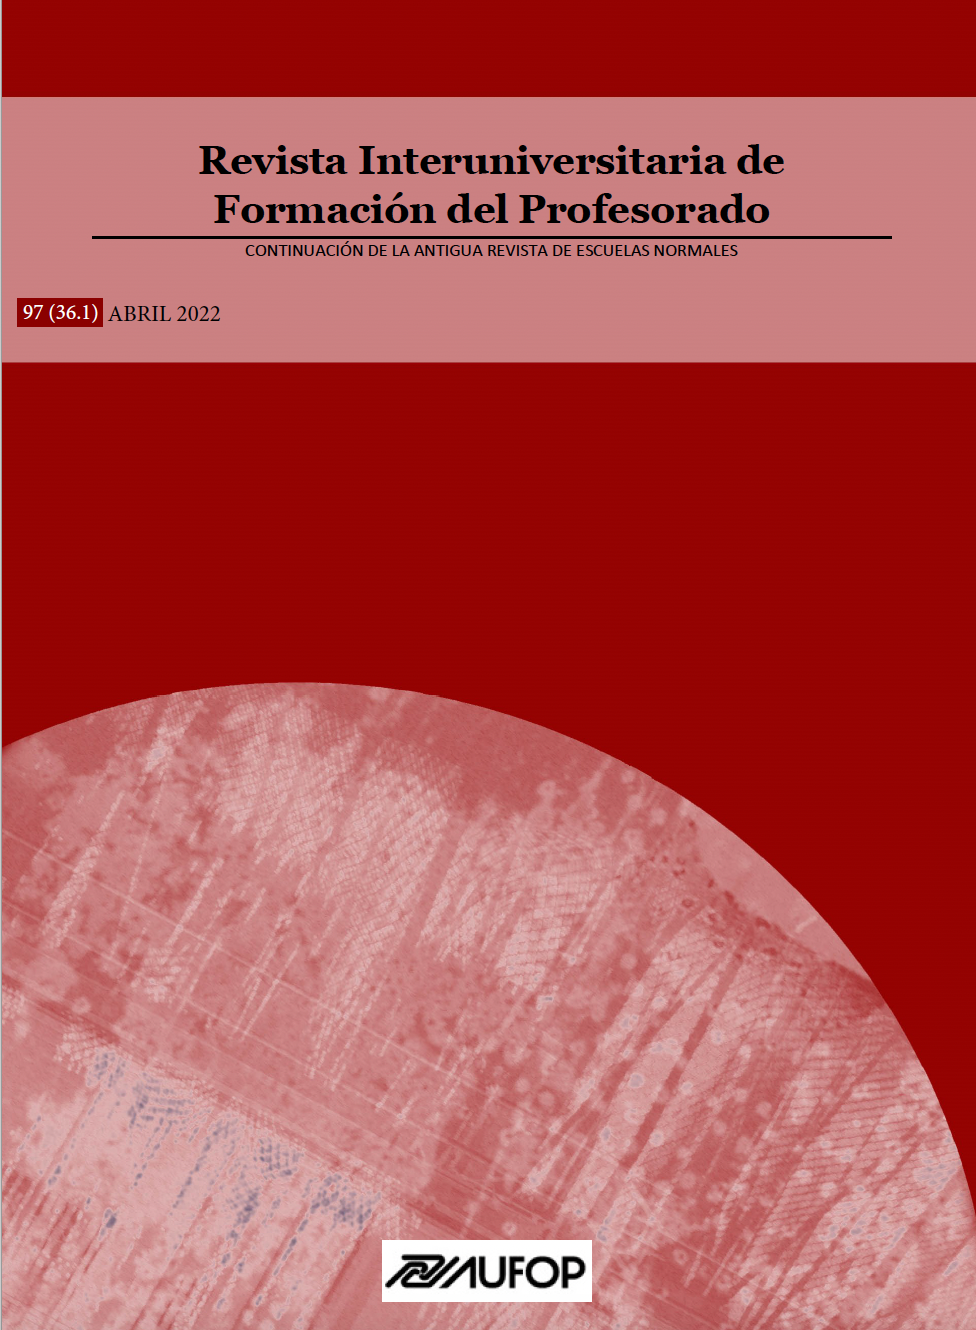 					Ver Vol. 97 Núm. 36.1 (2022): Formación del Profesorado en Didáctica de las Ciencias Experimentales
				